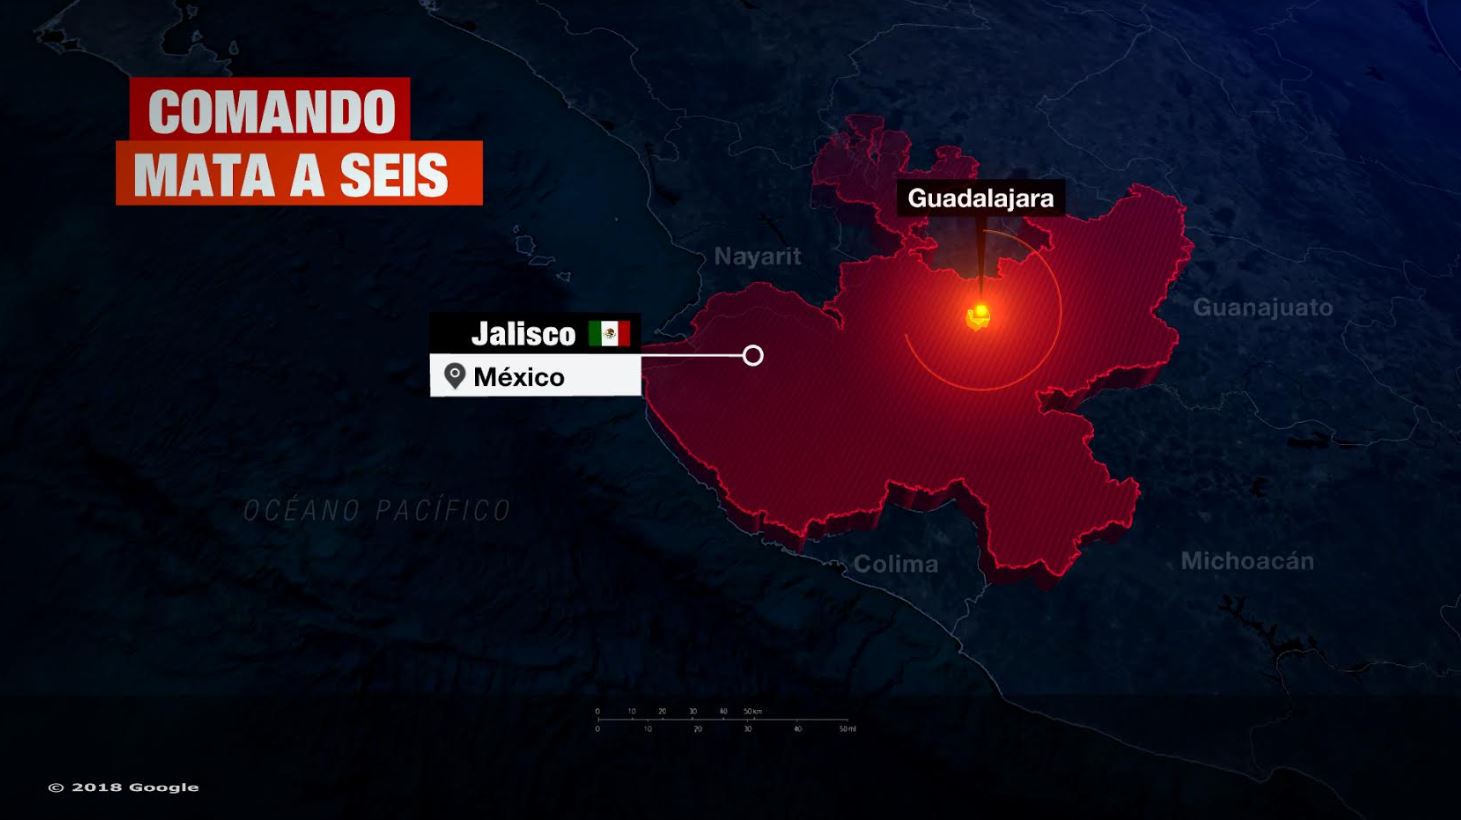 Matan a 6 hombres a tiros en Guadalajara, Jalisco